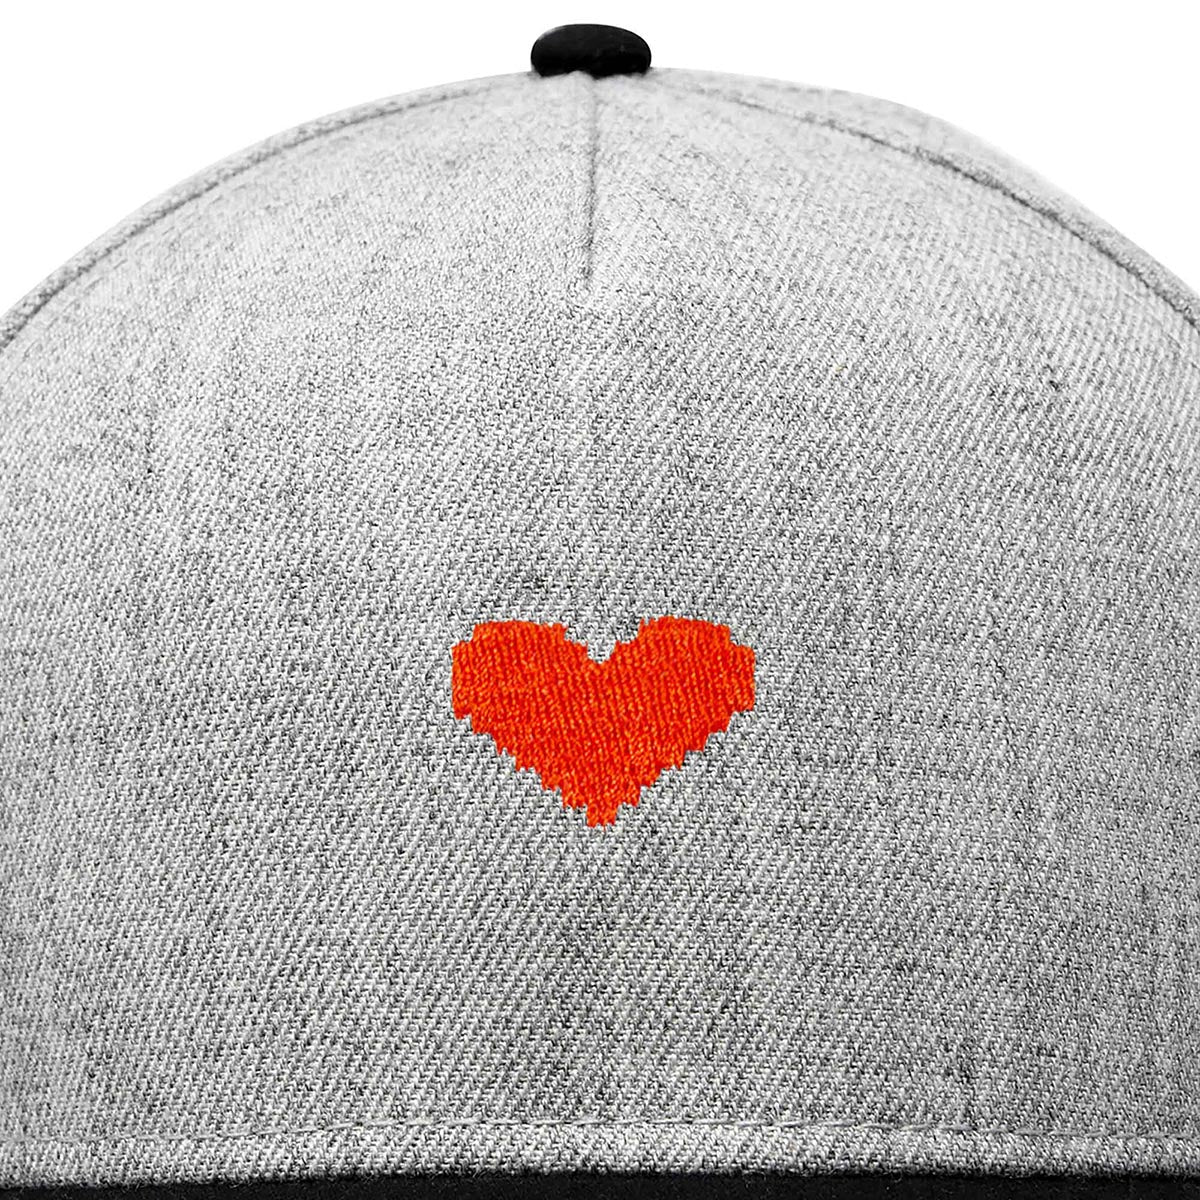 Dalix Pixel Heart Snapback Hat